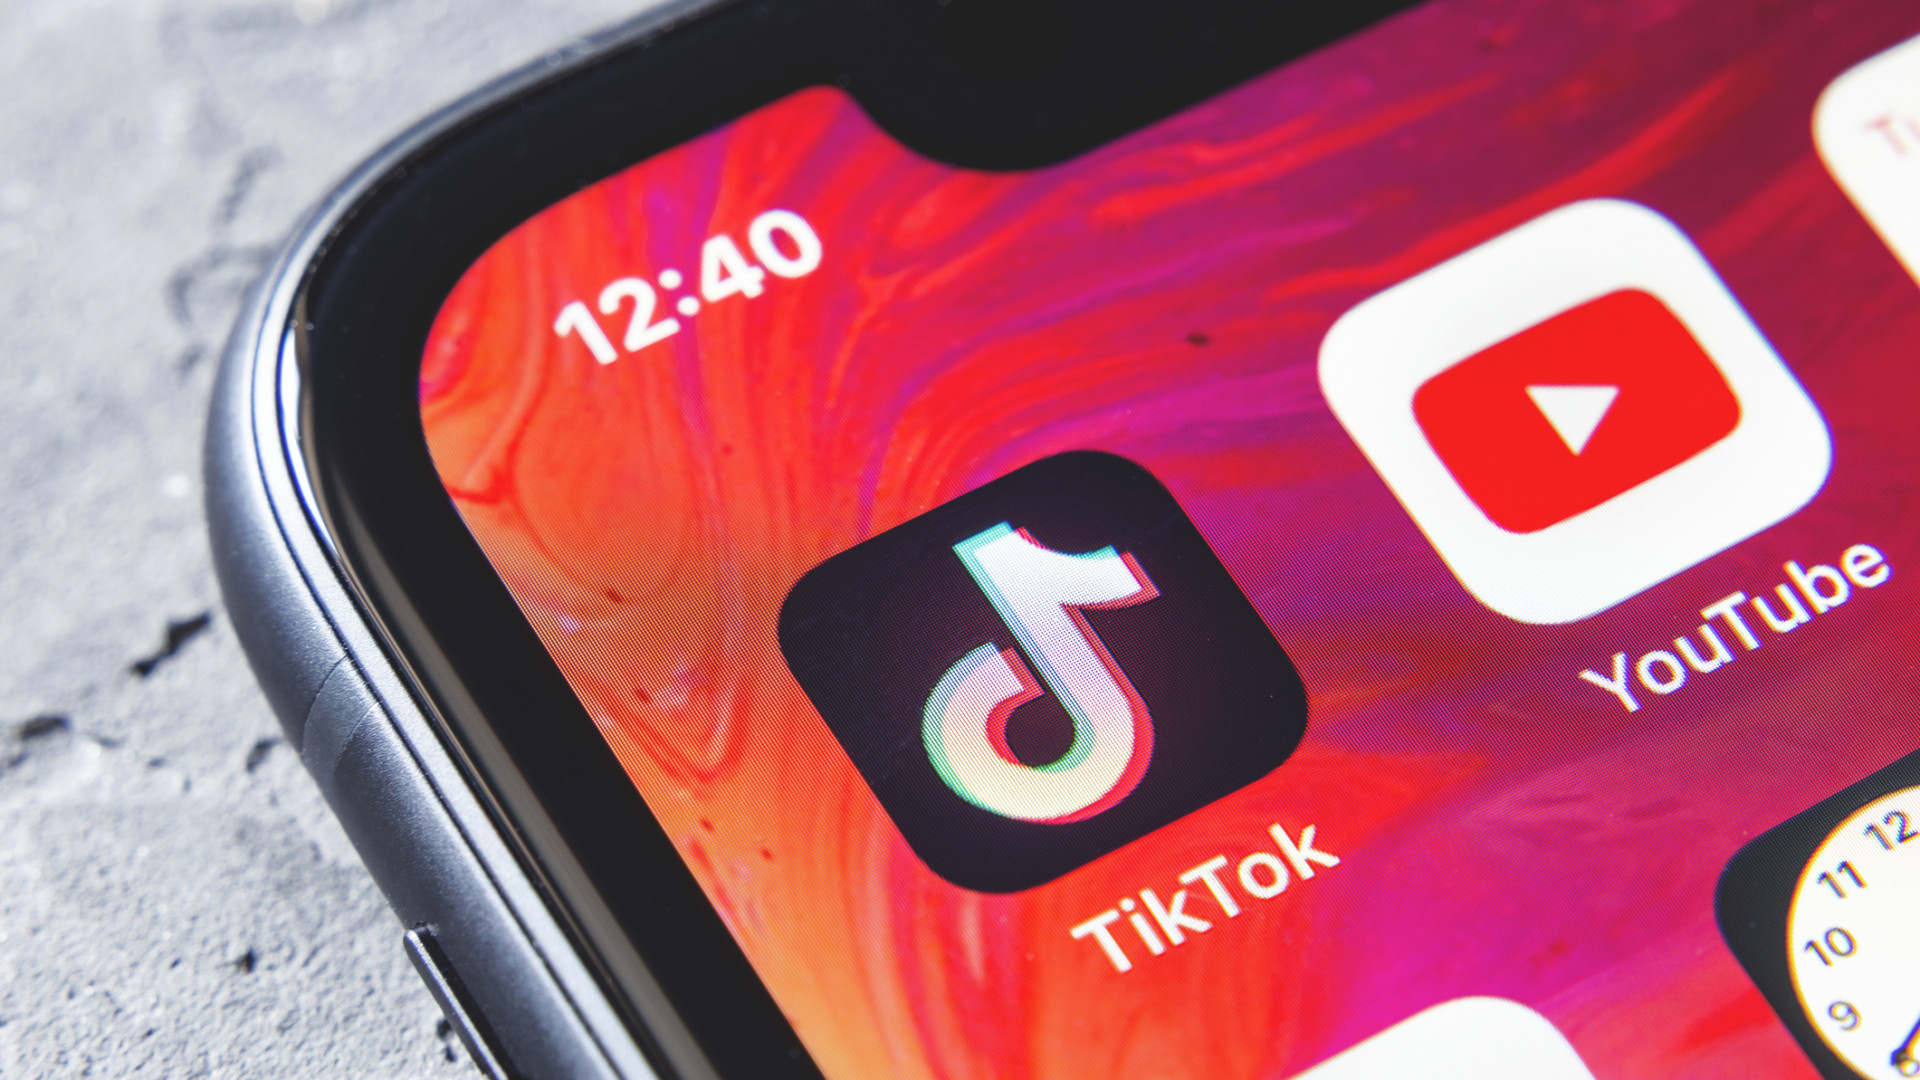 TikTok deve ser vendida até 15 de setembro para continuar nos EUA